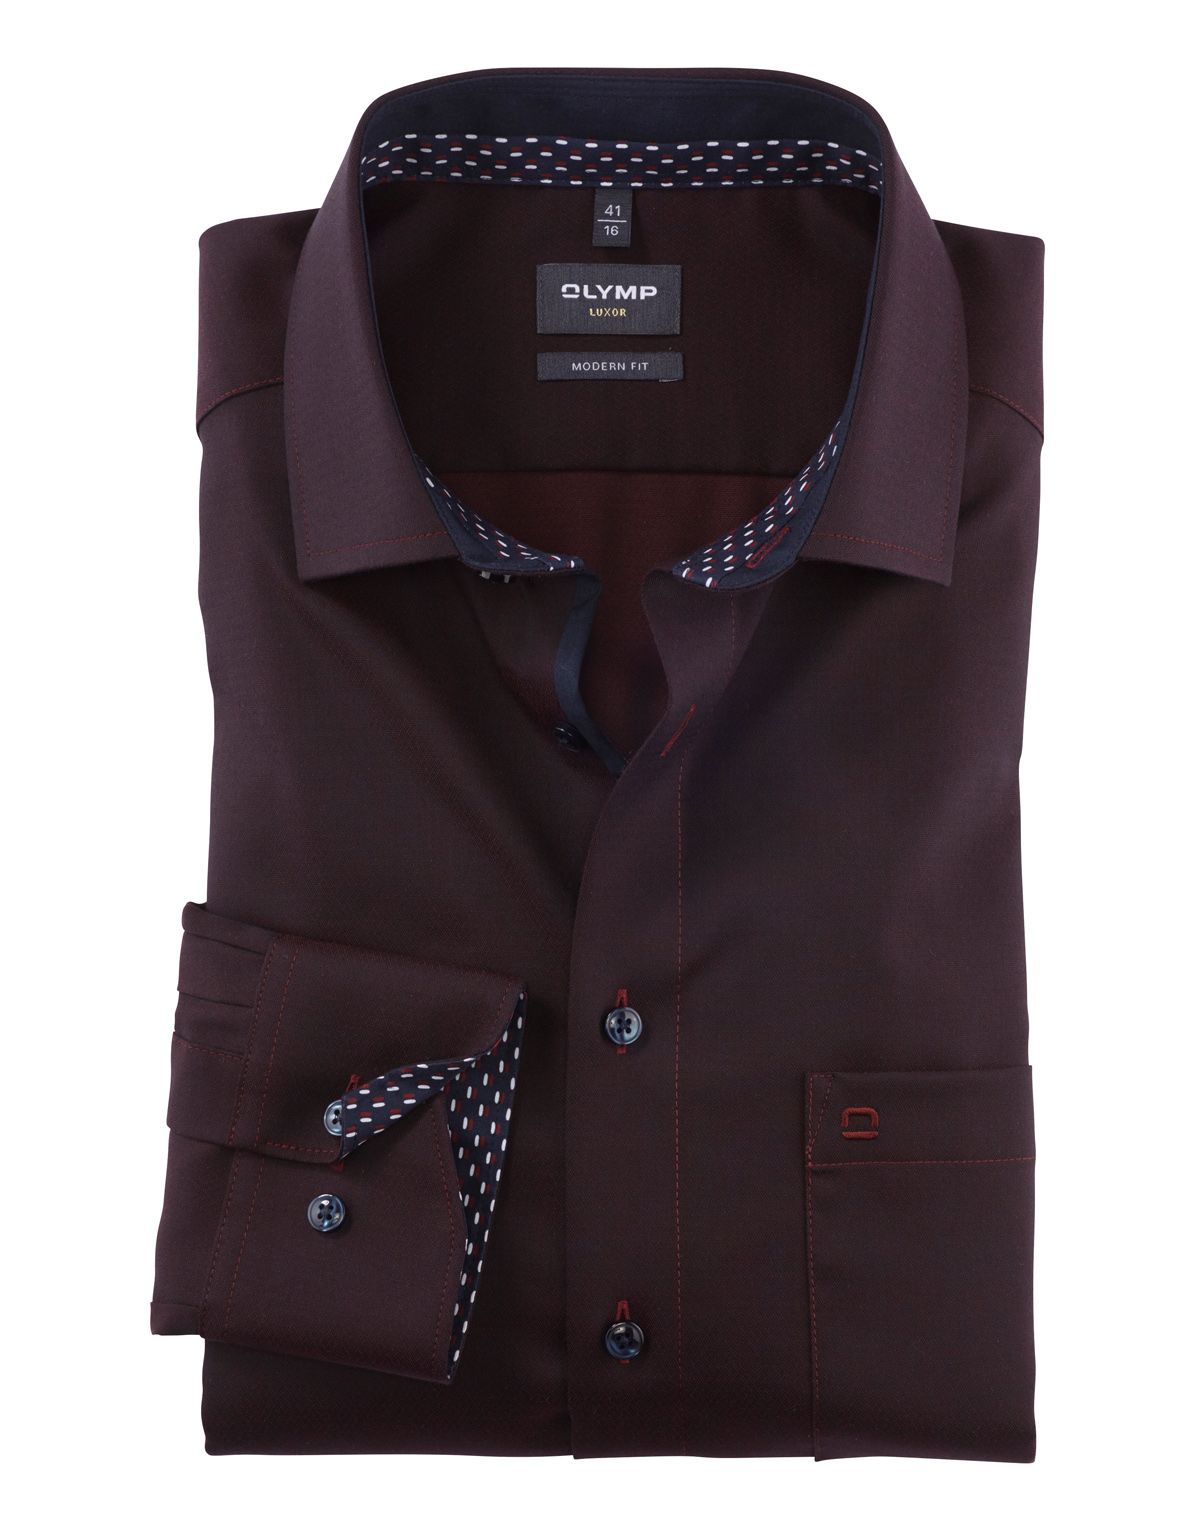 Рубашка мужская OLYMP Luxor, modern fit, фактурная ткань, рост выше 186[Бордовый]